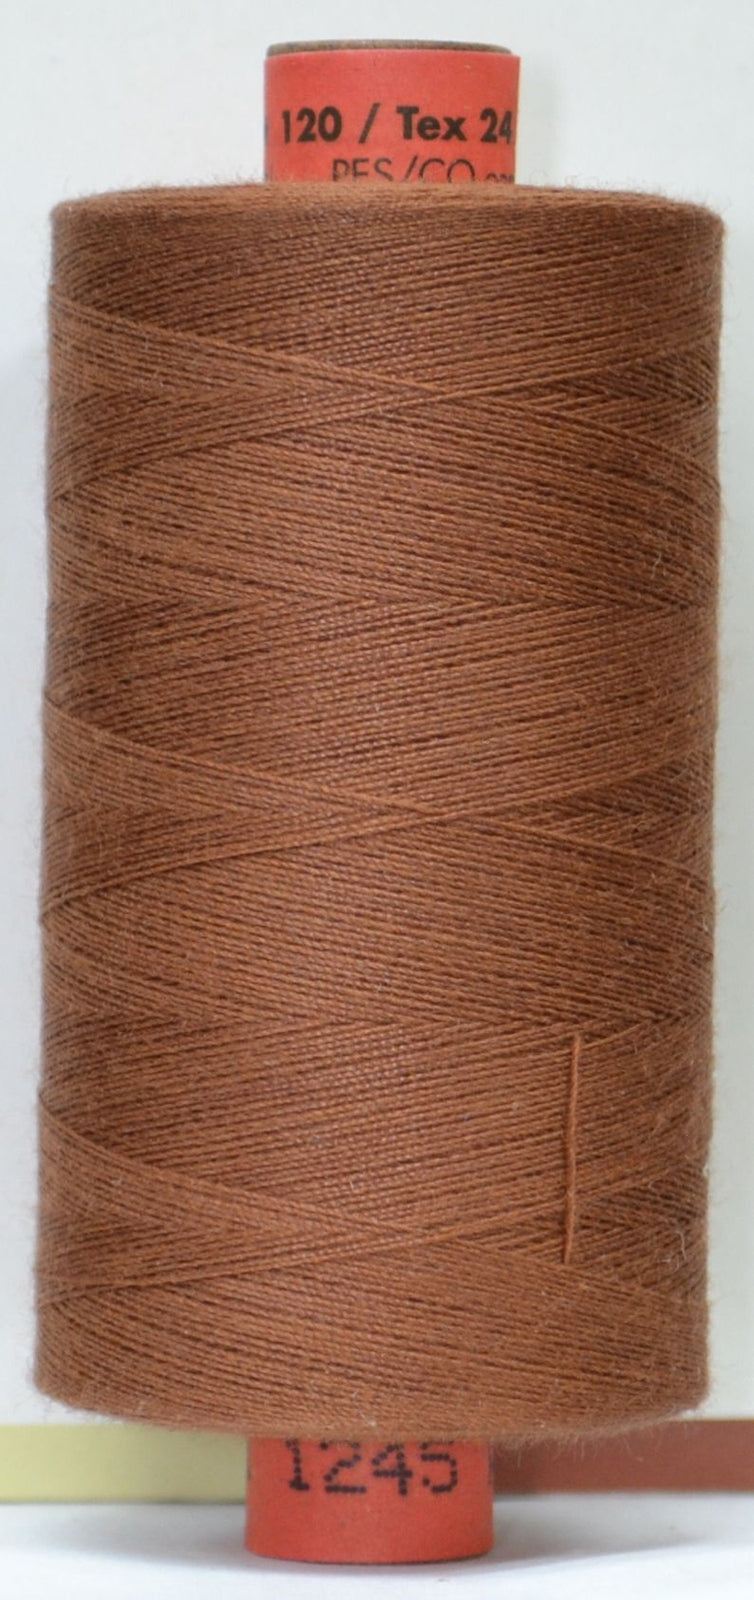 Rasant Cotton 1000m - Brown